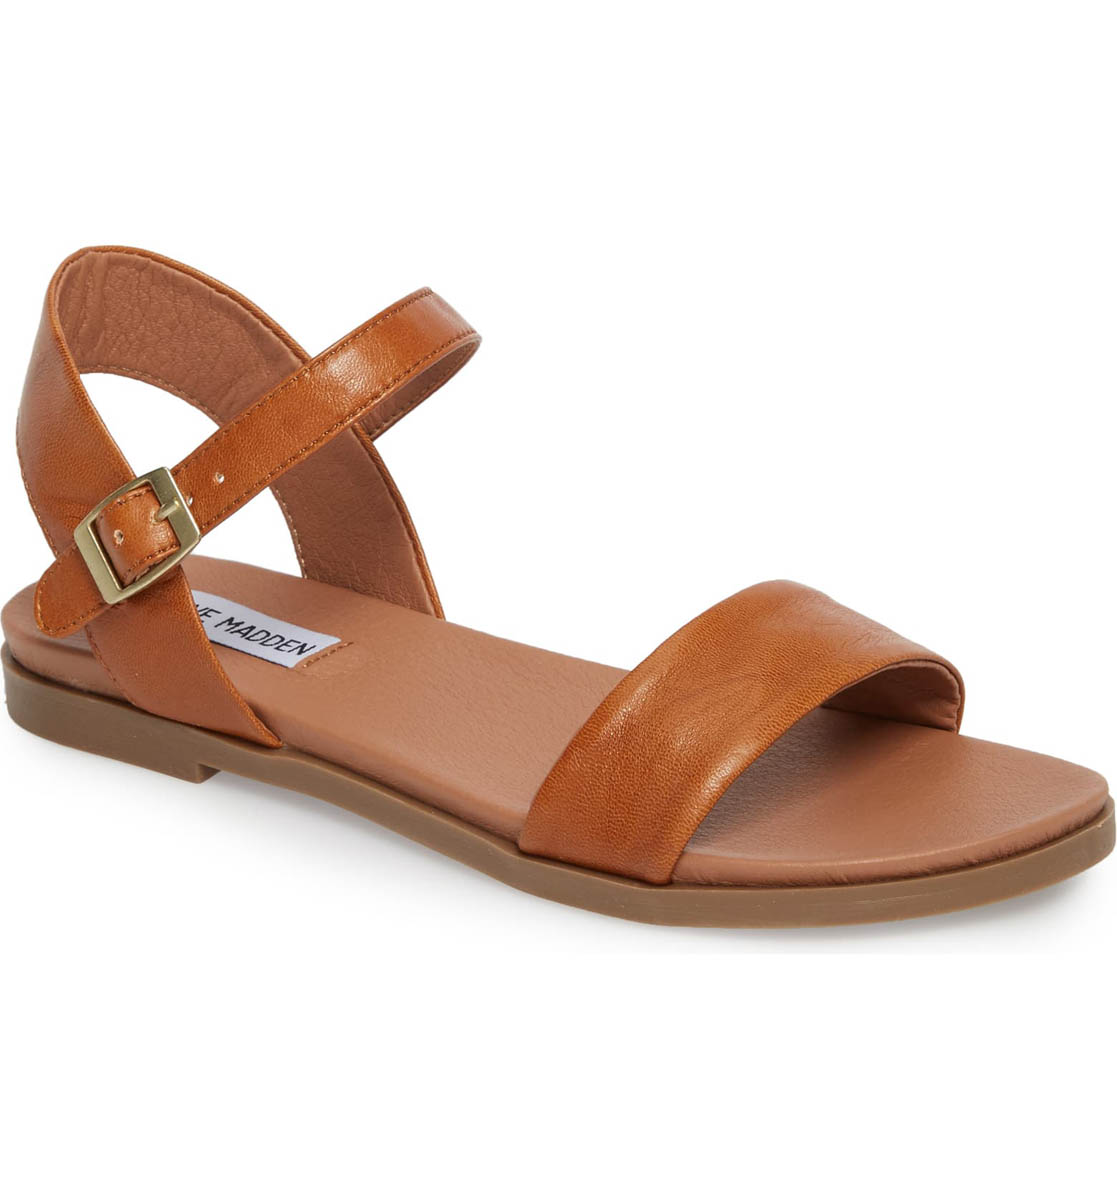 minimalist tan leather summer sandal